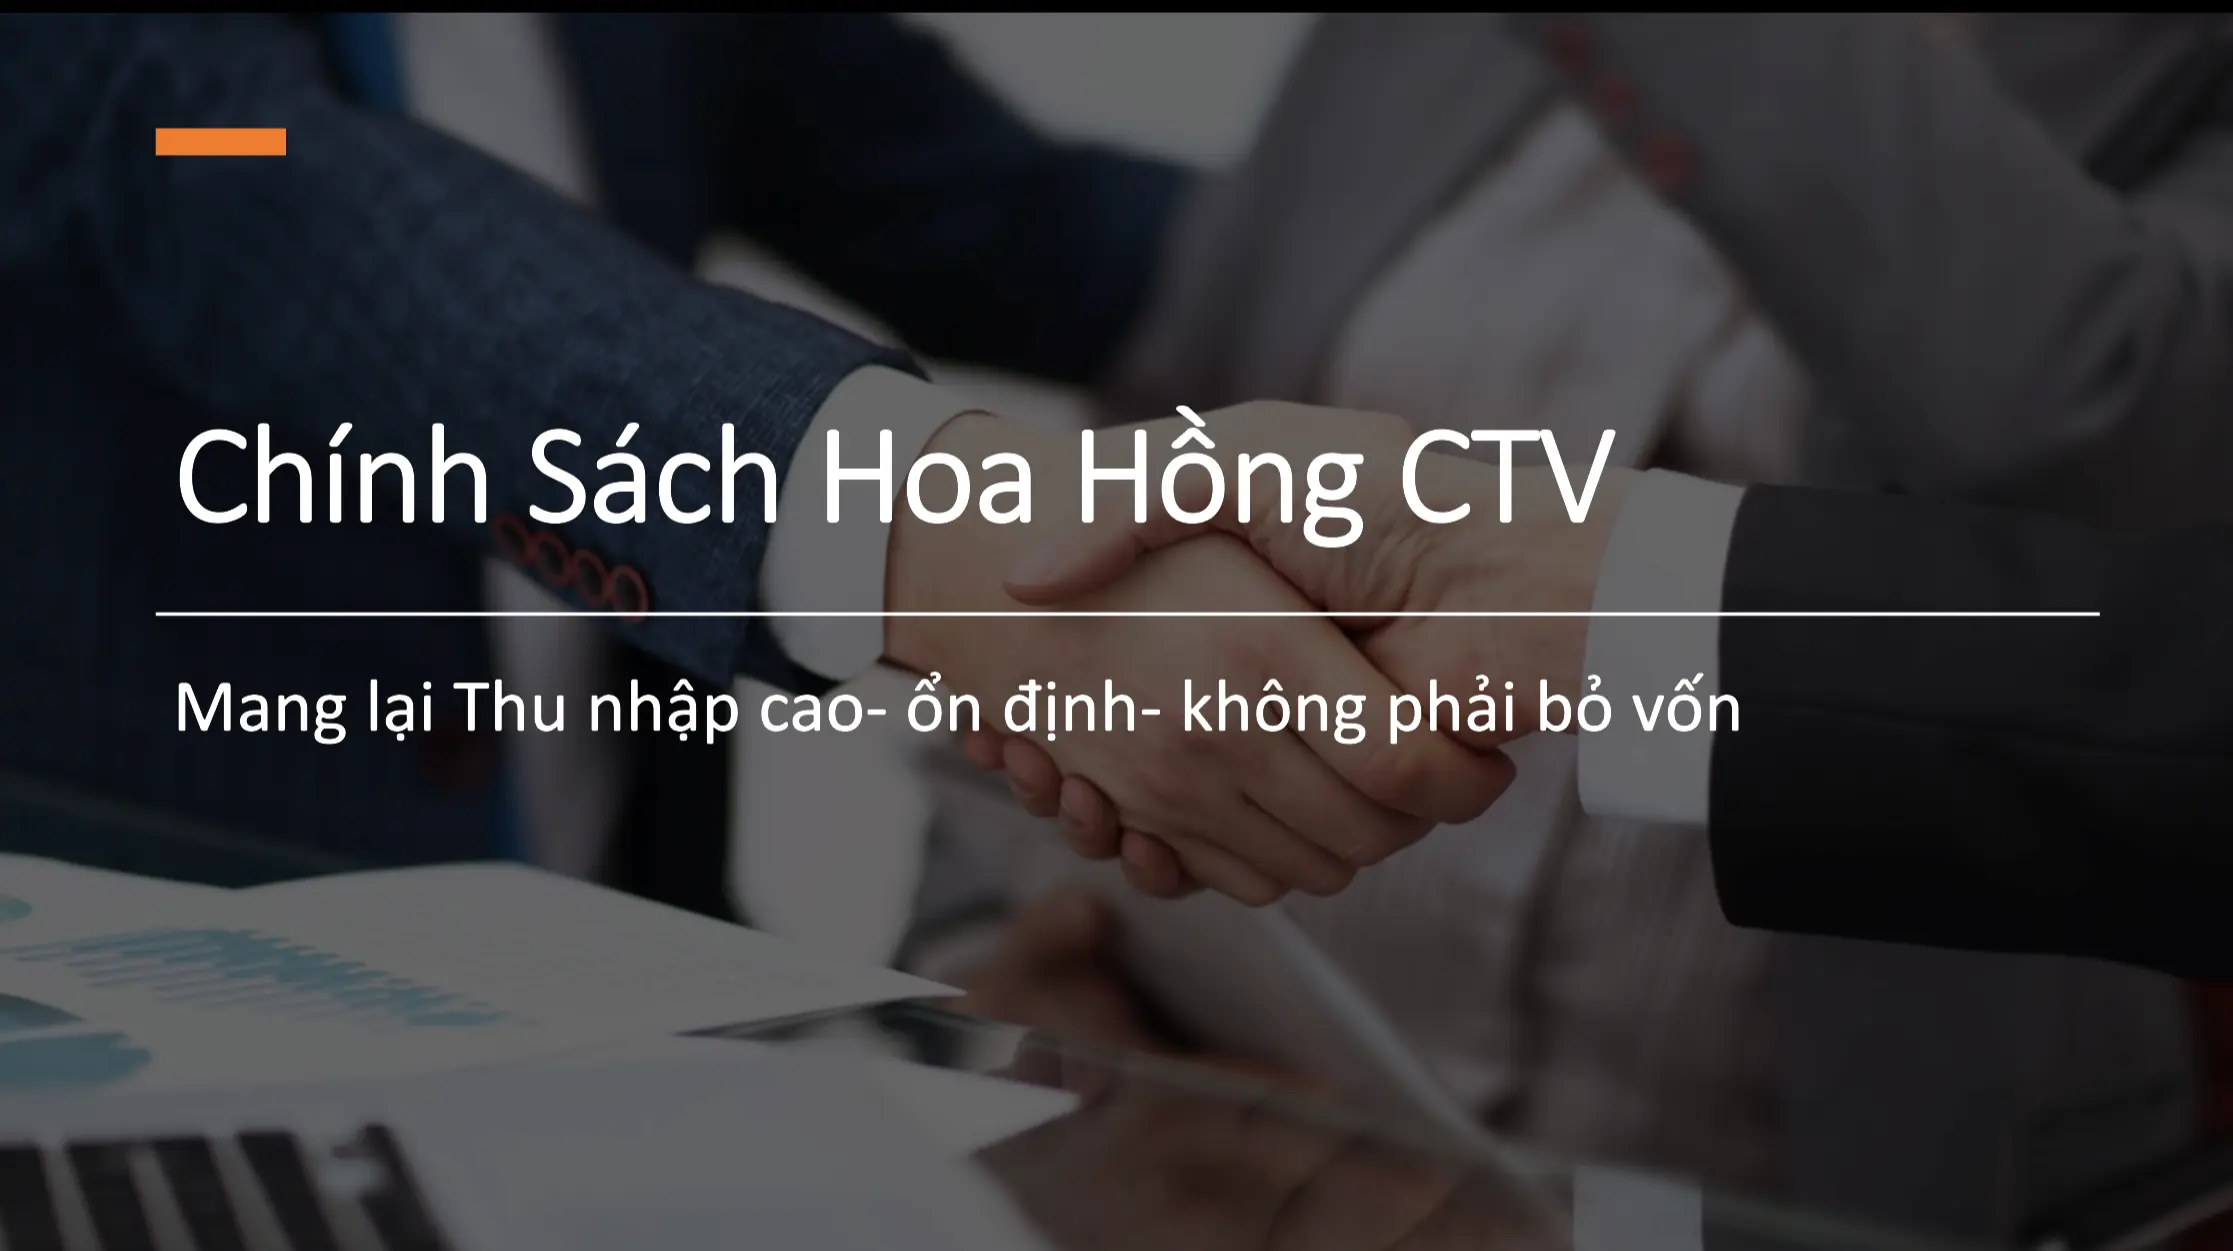 Bài 2: Chính Sách Hoa Hồng Cho CTV